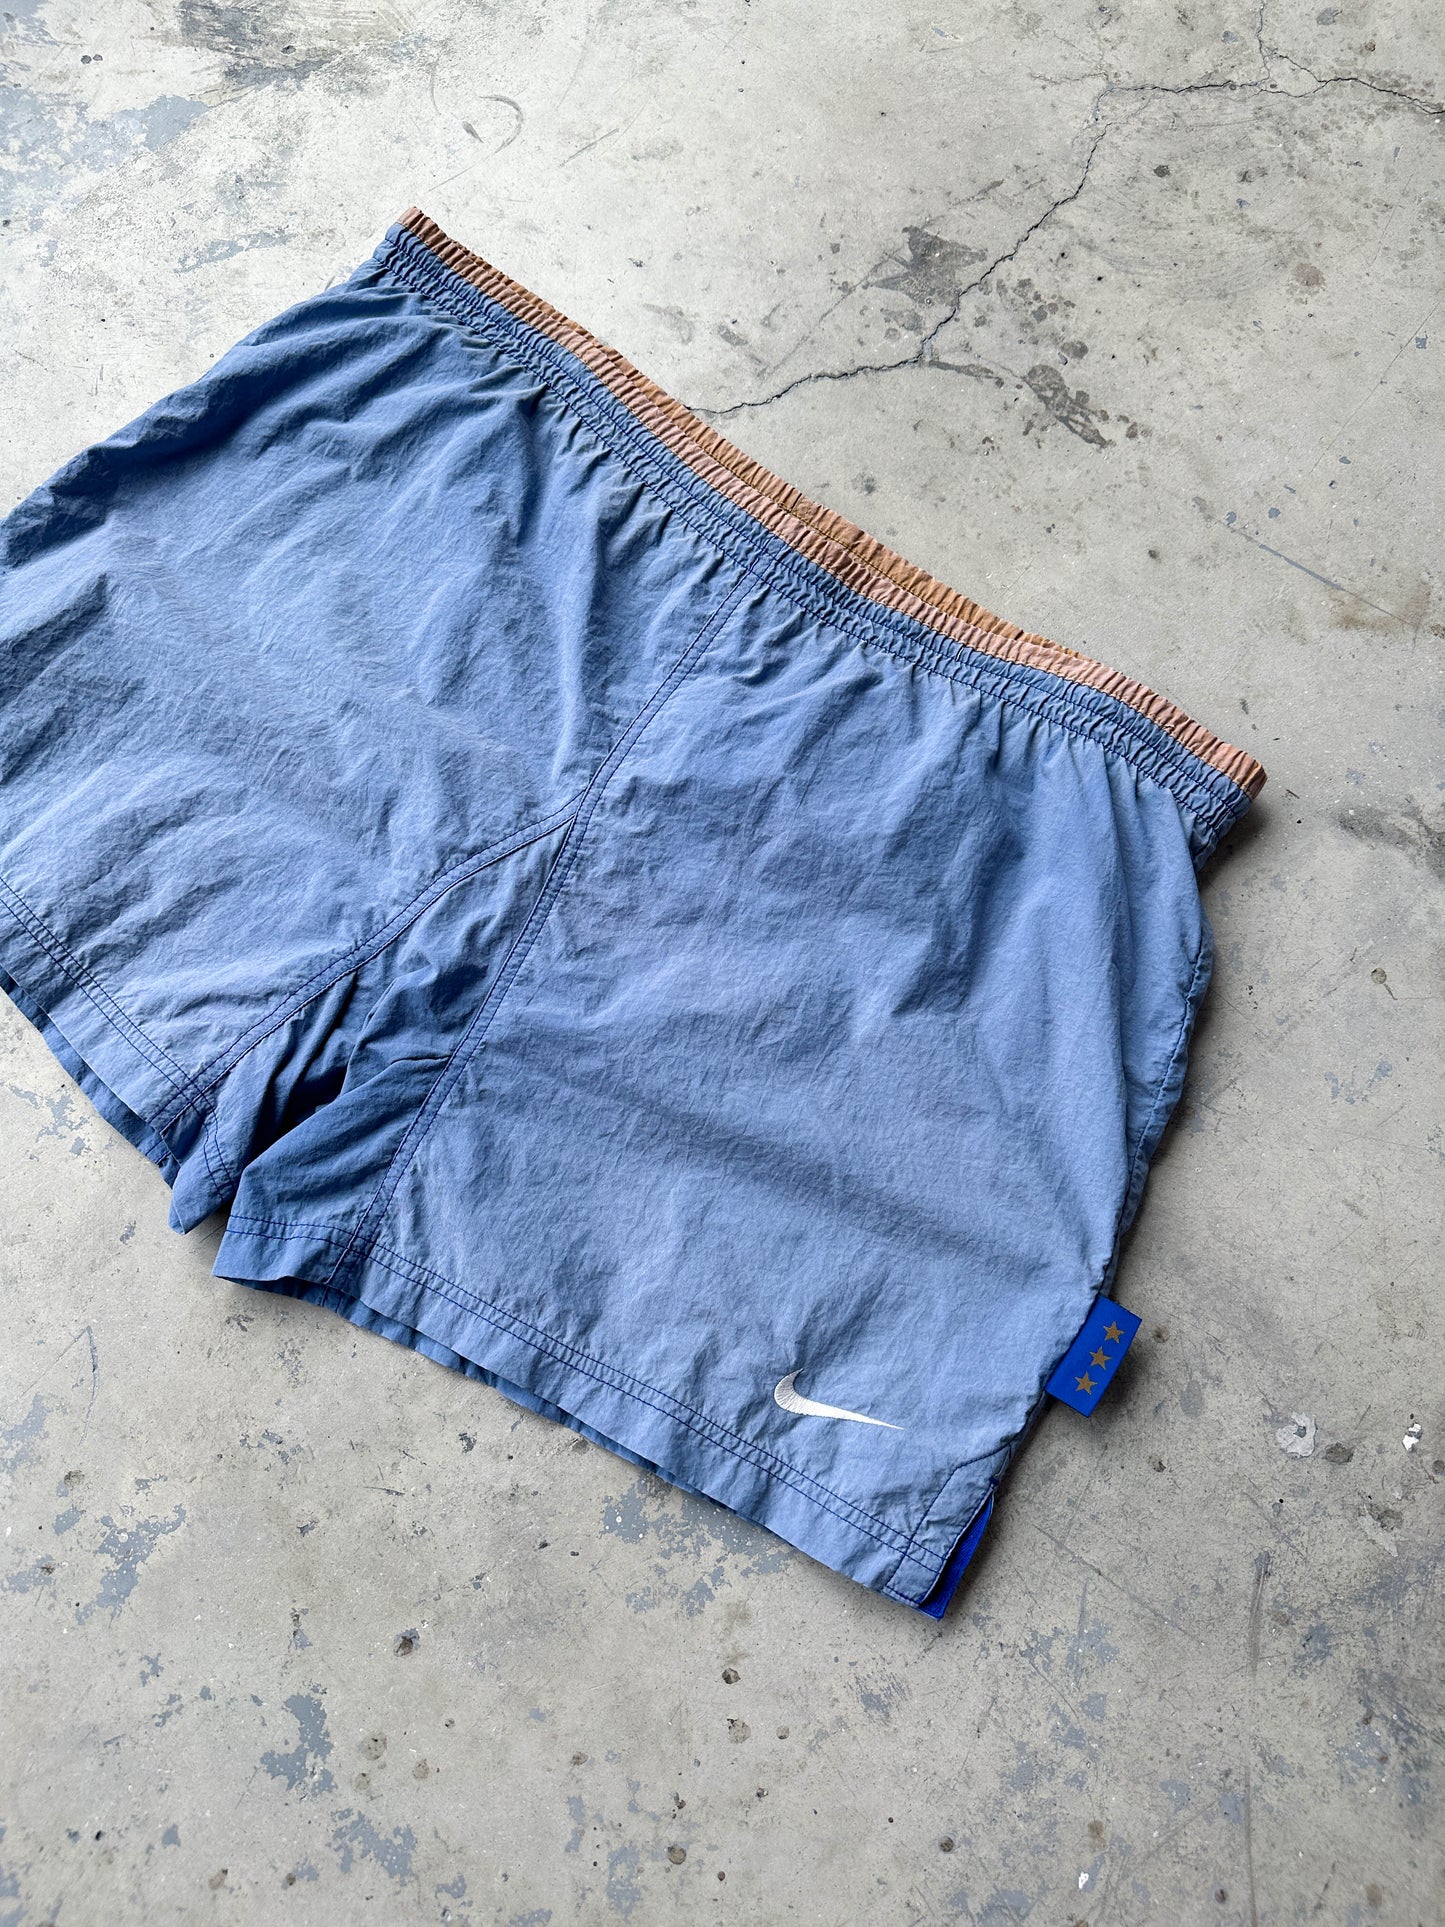 Vintage 90s Nike shorts